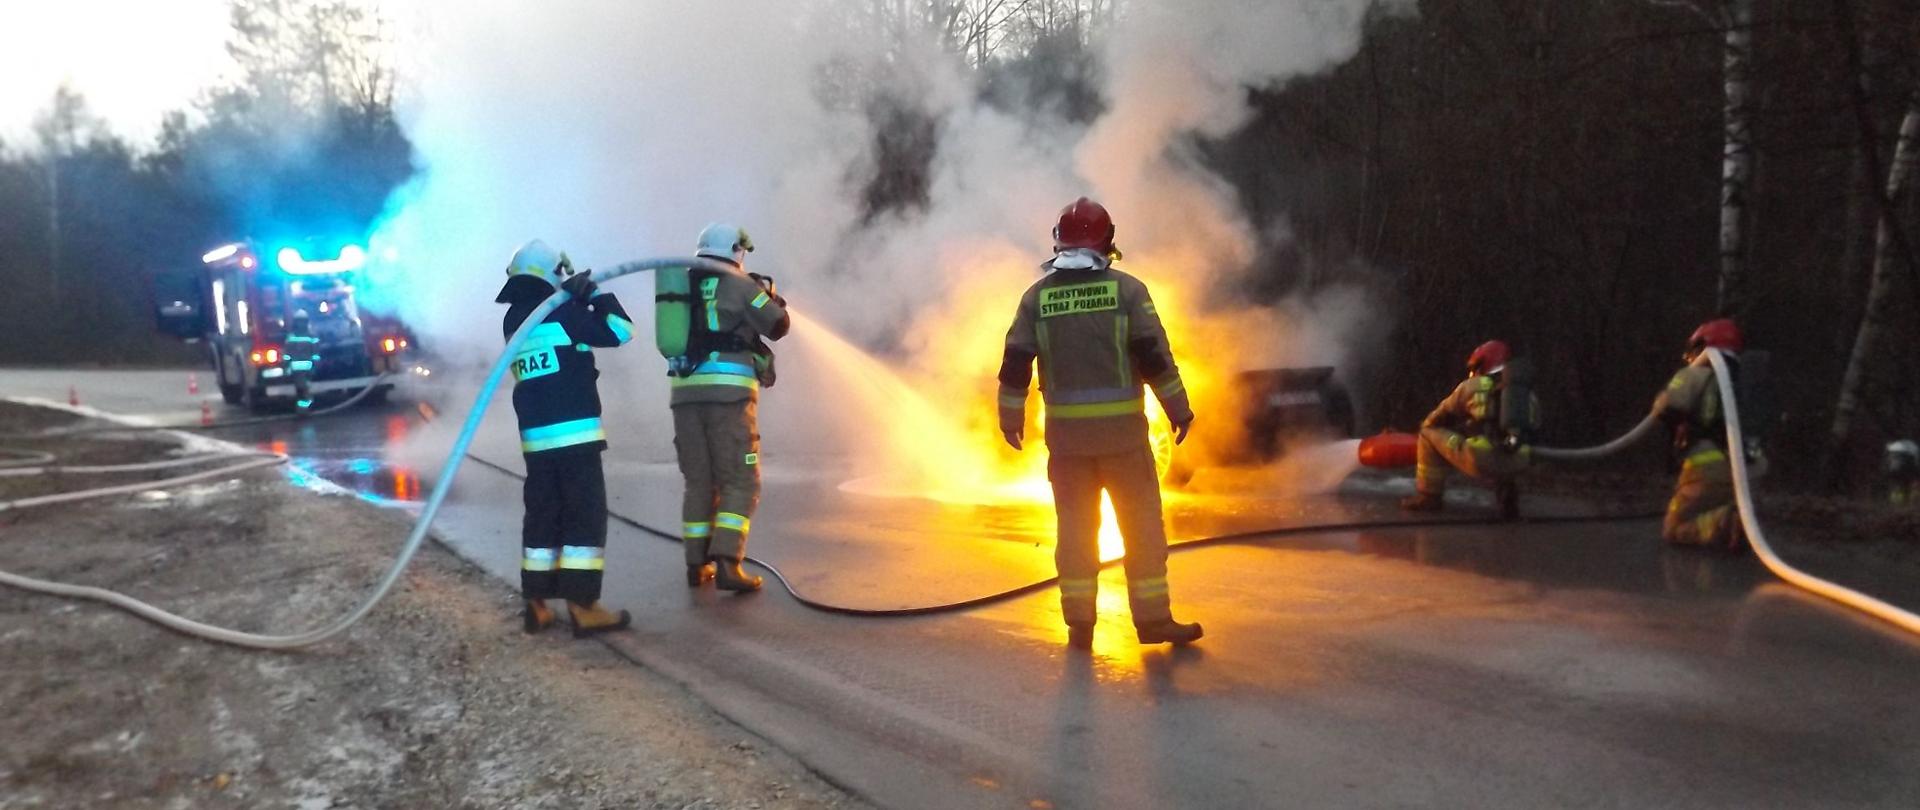 Na zdjęciu znajdują się strażacy gaszący pożar samochodu. Samochód znajduje się na drodze przy lesie - w tle samochód strażacki na sygnałach świetlnych.